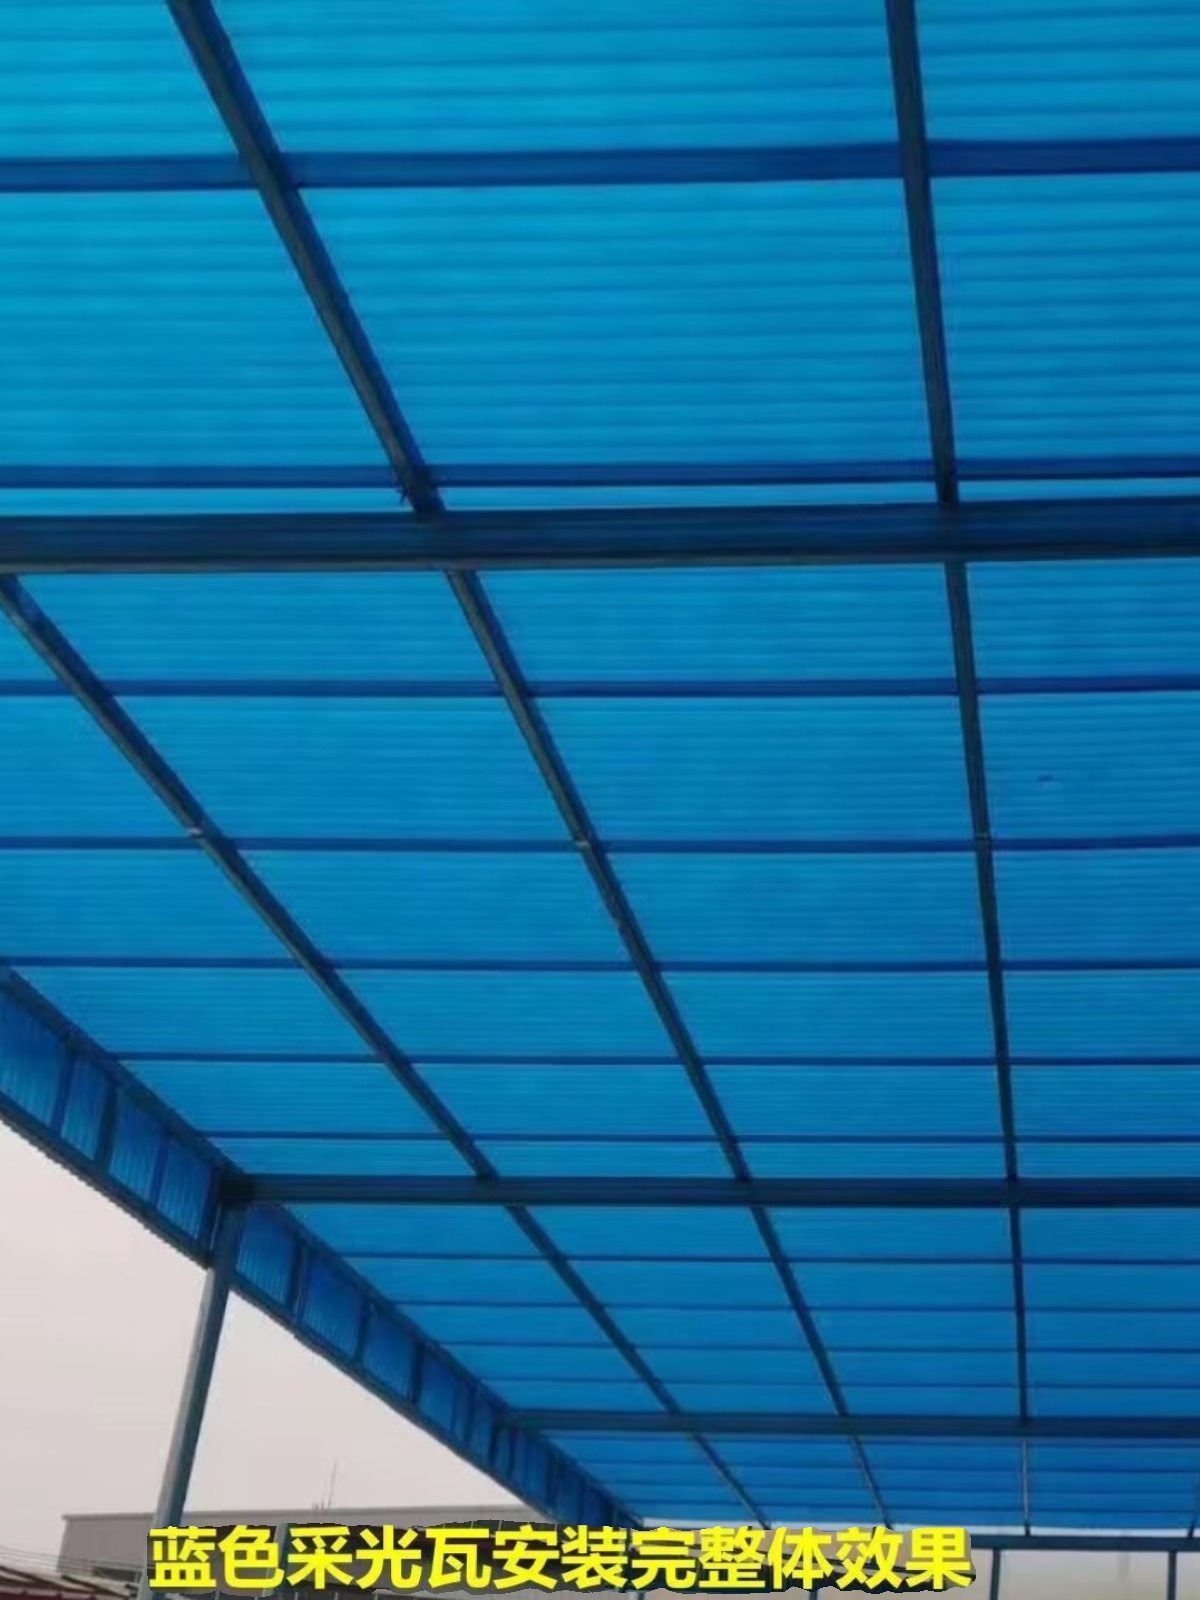 瓦遮阳台阳光房瓦板防紫外线光雨遮阳板雨棚楞车棚阳光板采蓝色